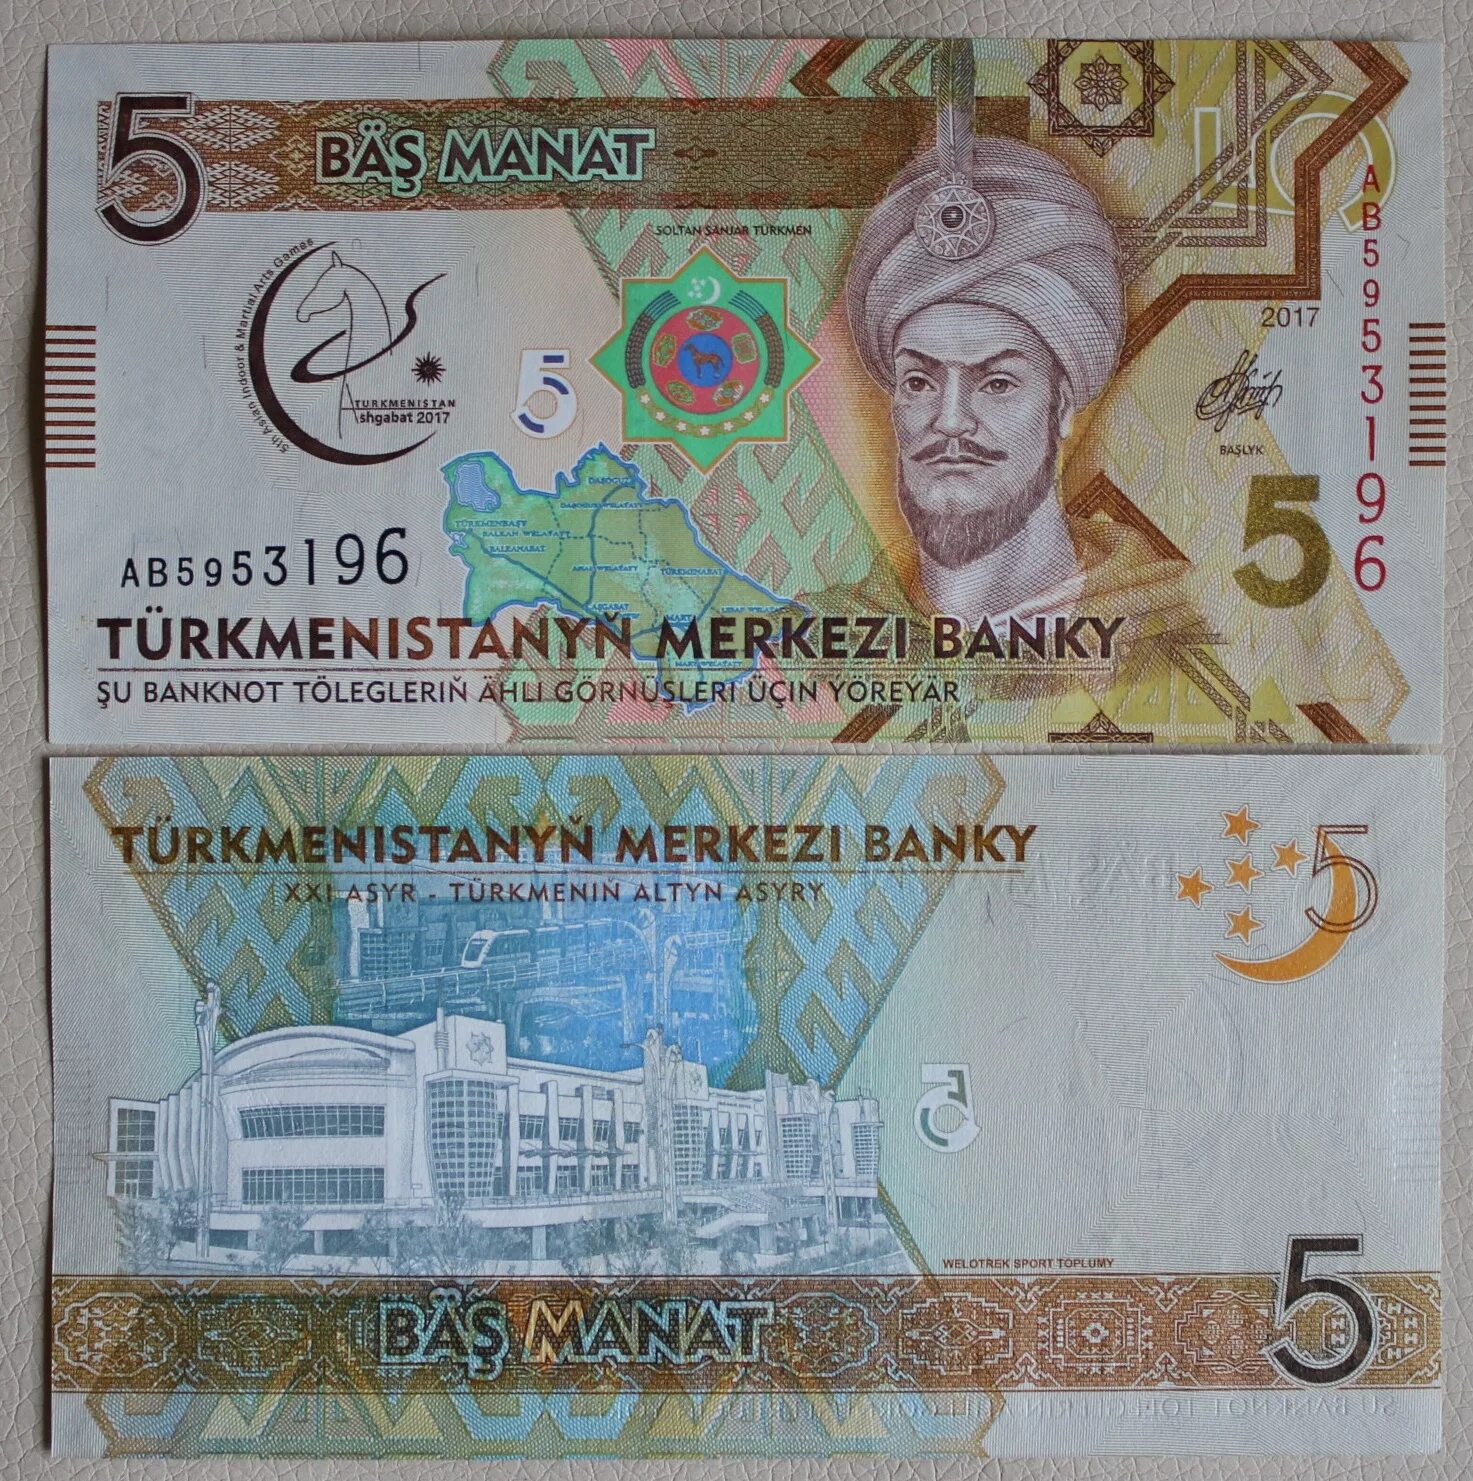 300 манат в рублях на сегодня. Банкноты Туркмении 5 манат. 1 Манат Туркменистан. Банкнота туркменский манат. Современные банкноты Туркменистана.